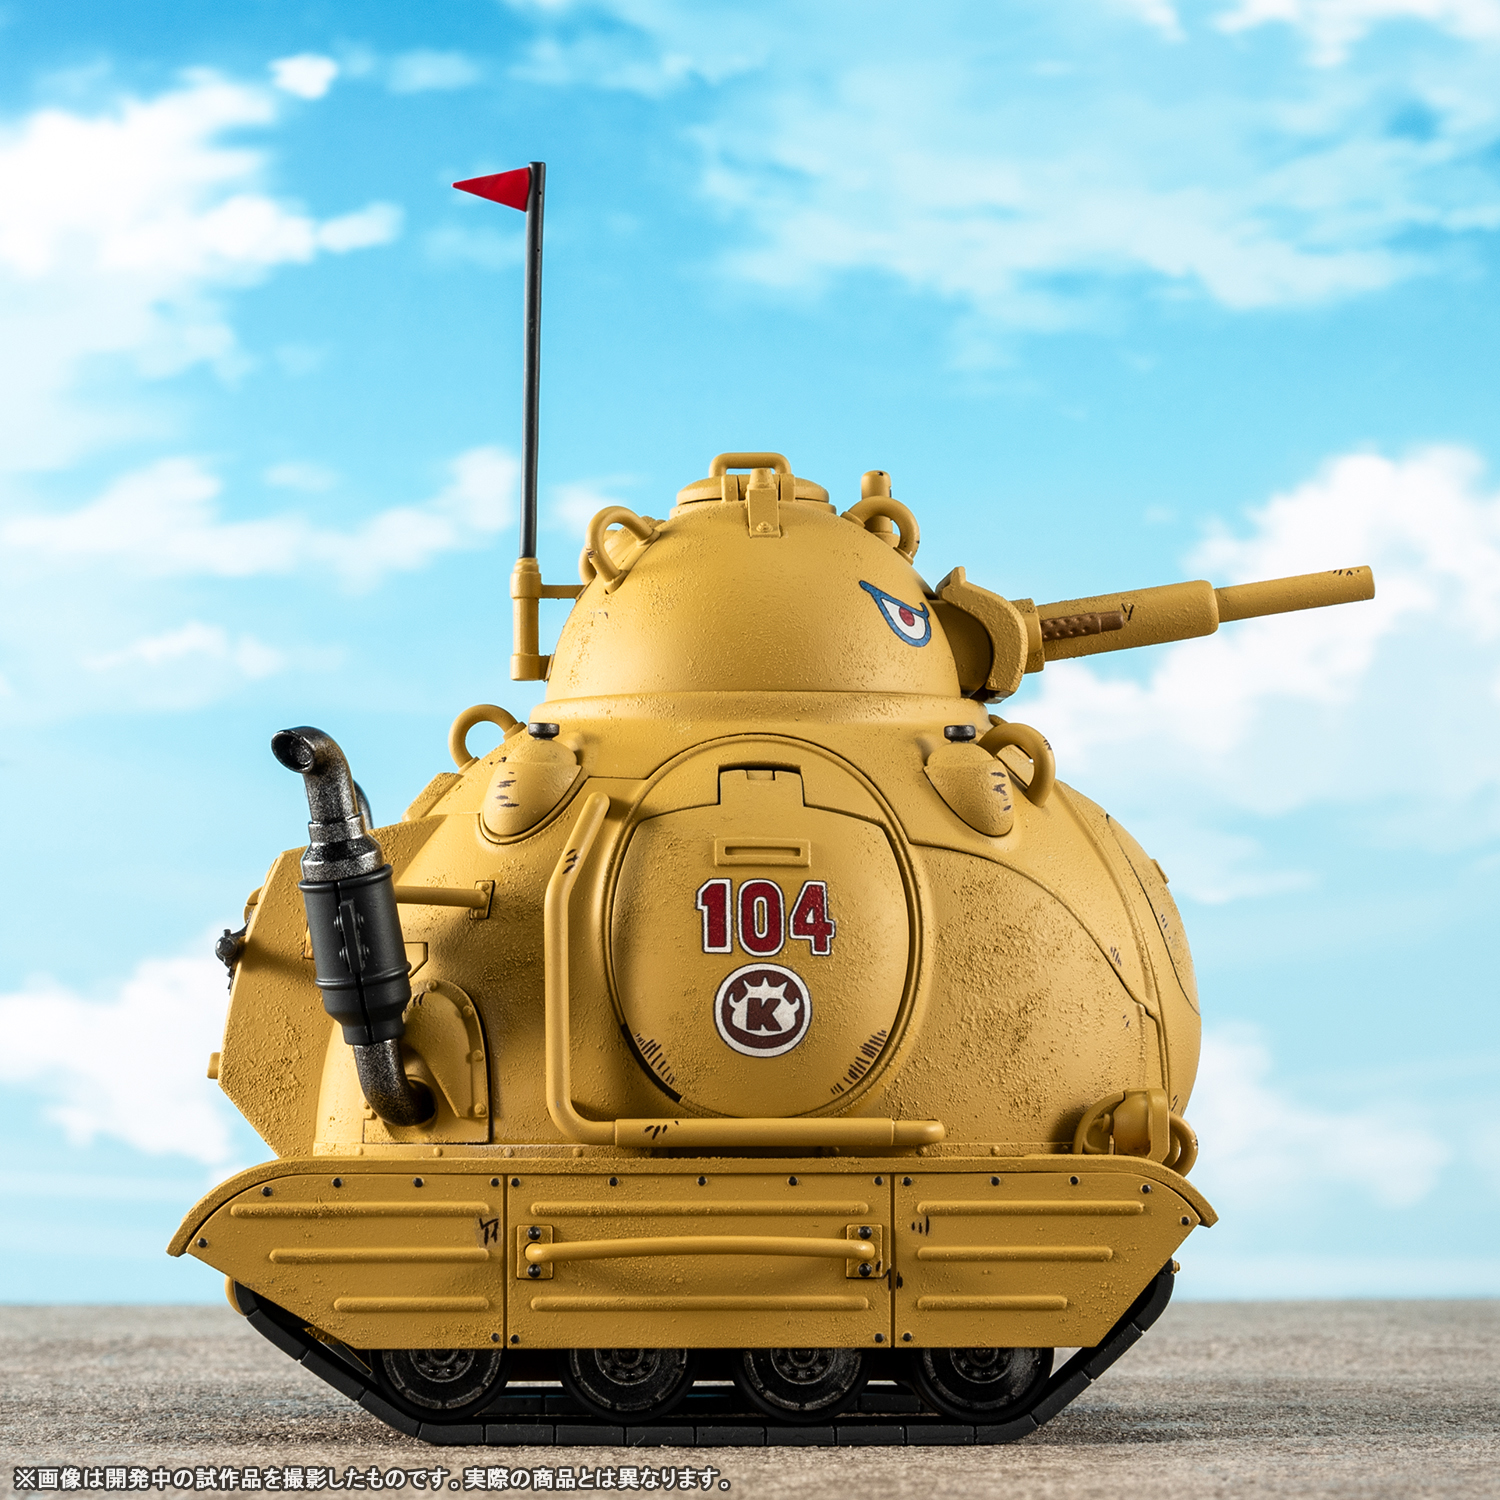 「超合金 サンドランド国王軍戦車隊104号車」イメージ画像